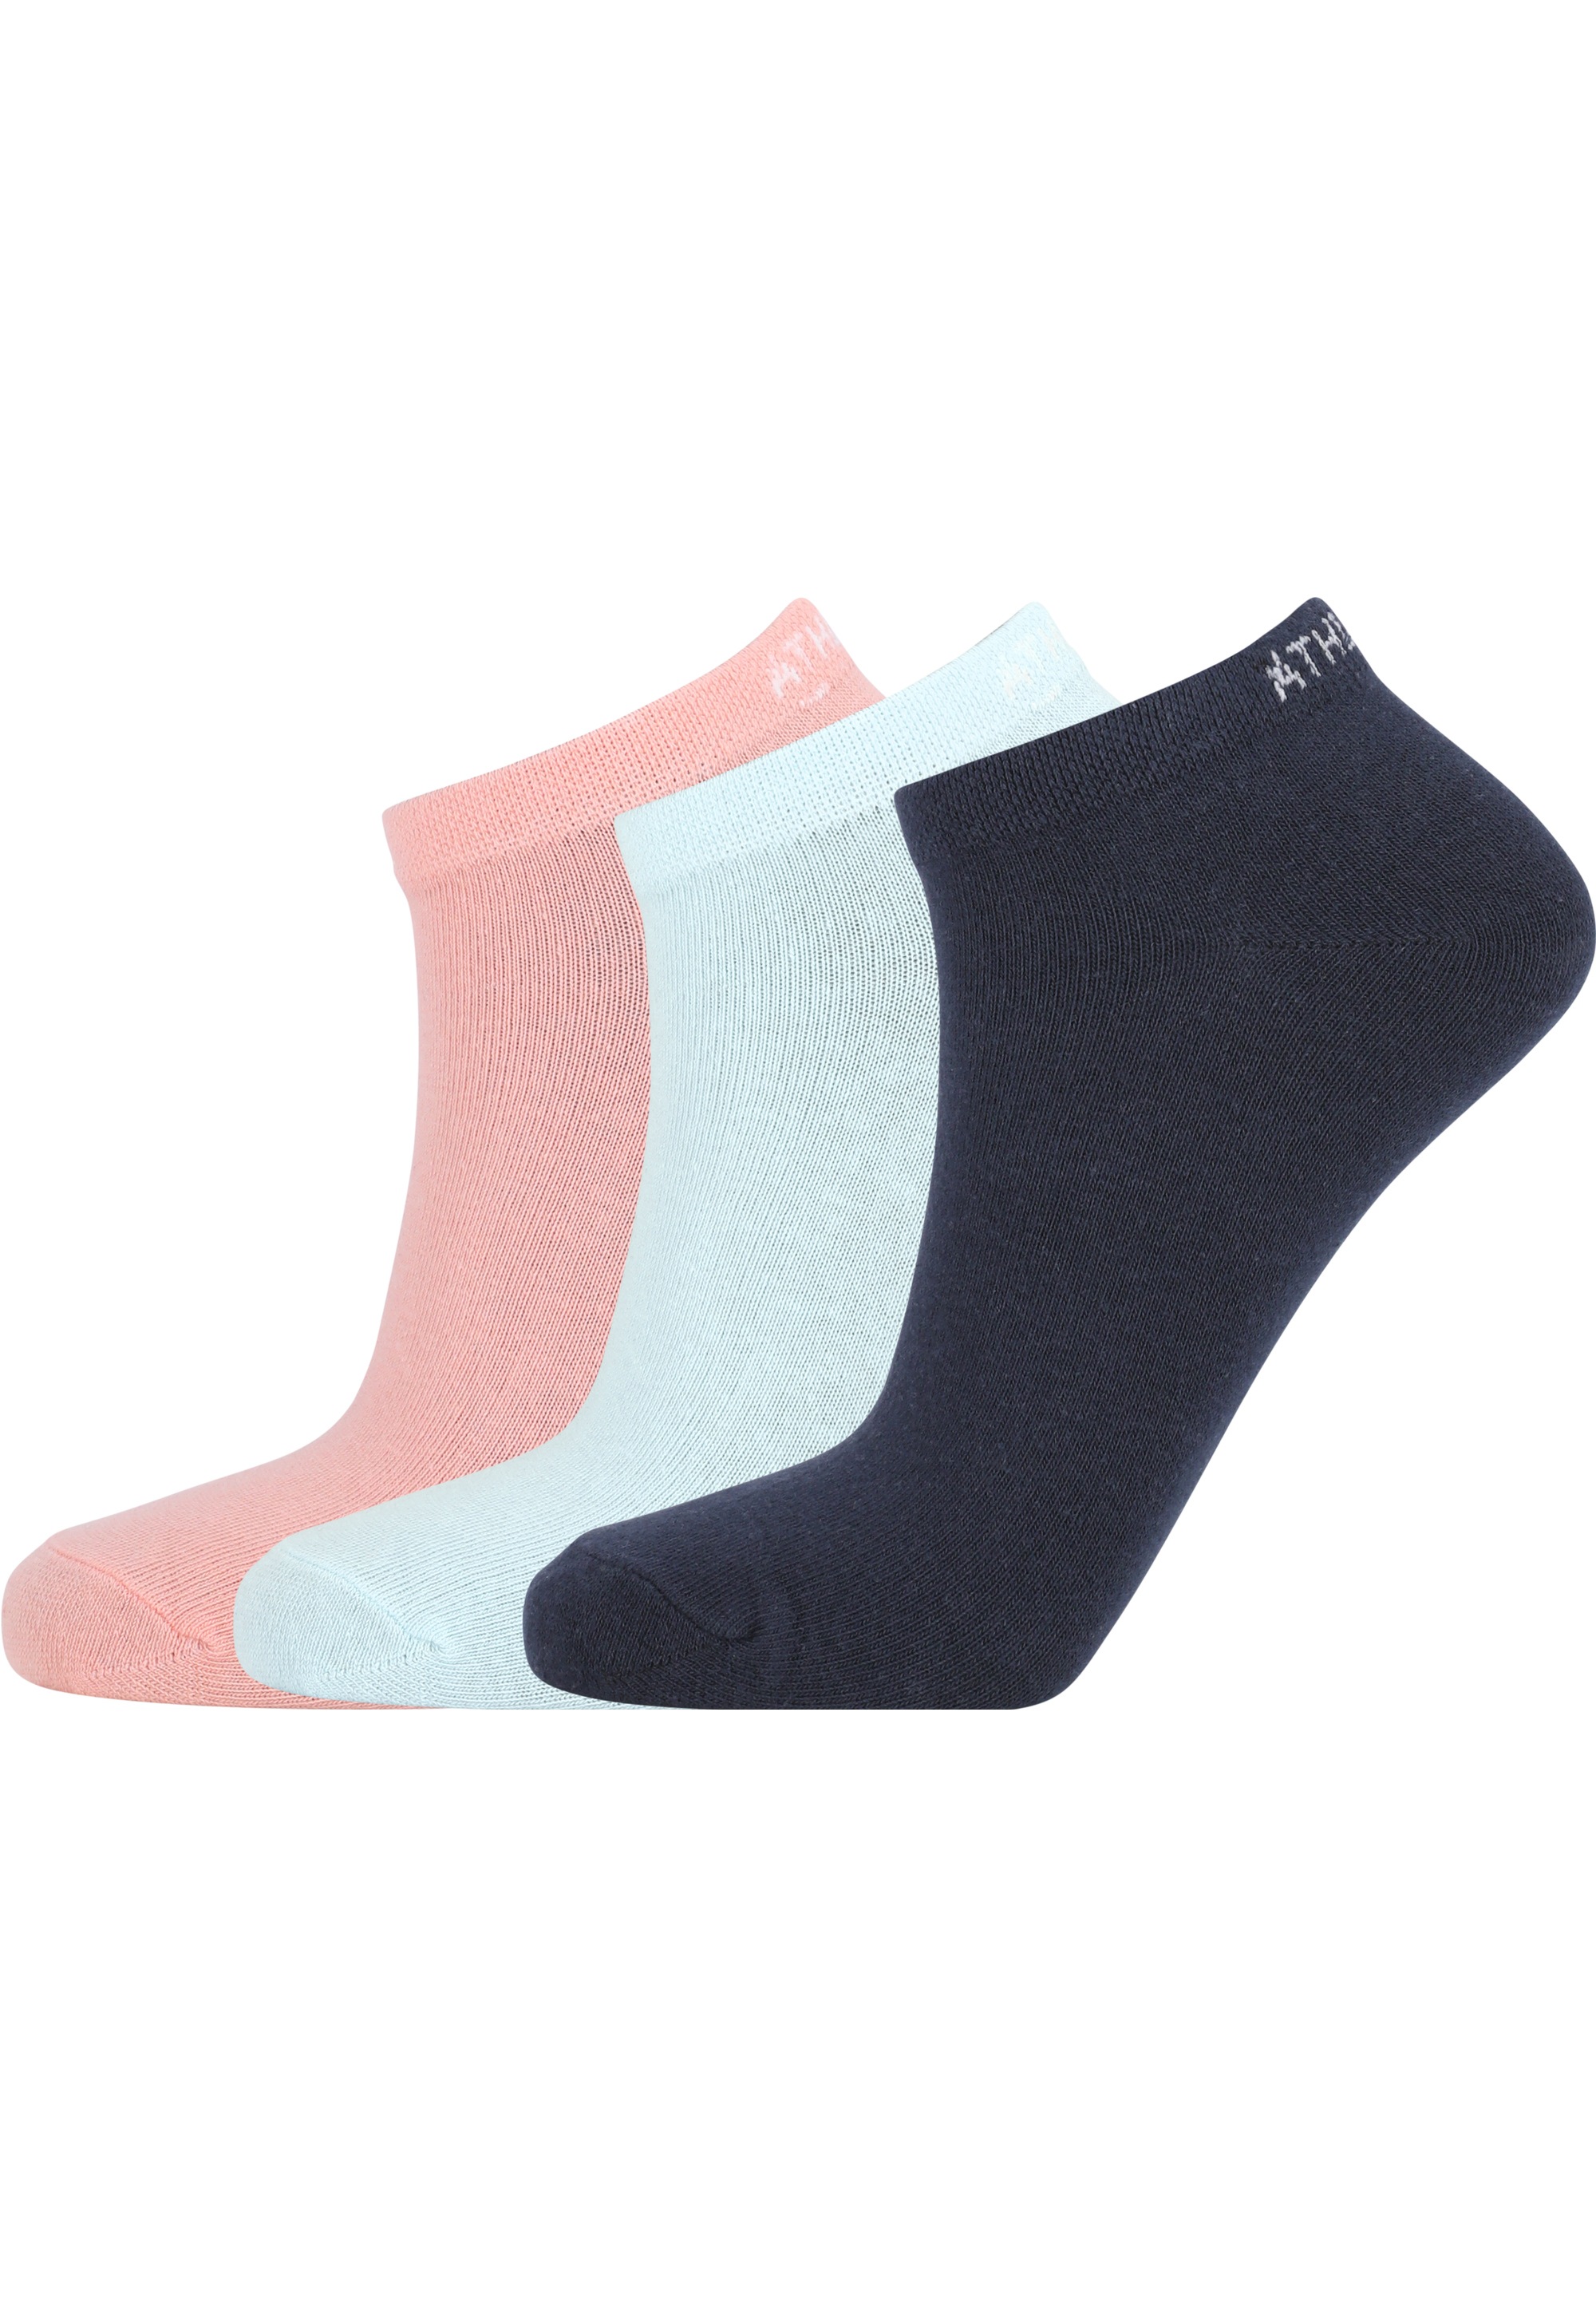 Socken »Bonie«, aus atmungsaktivem und komfortablem Baumwoll-Mix